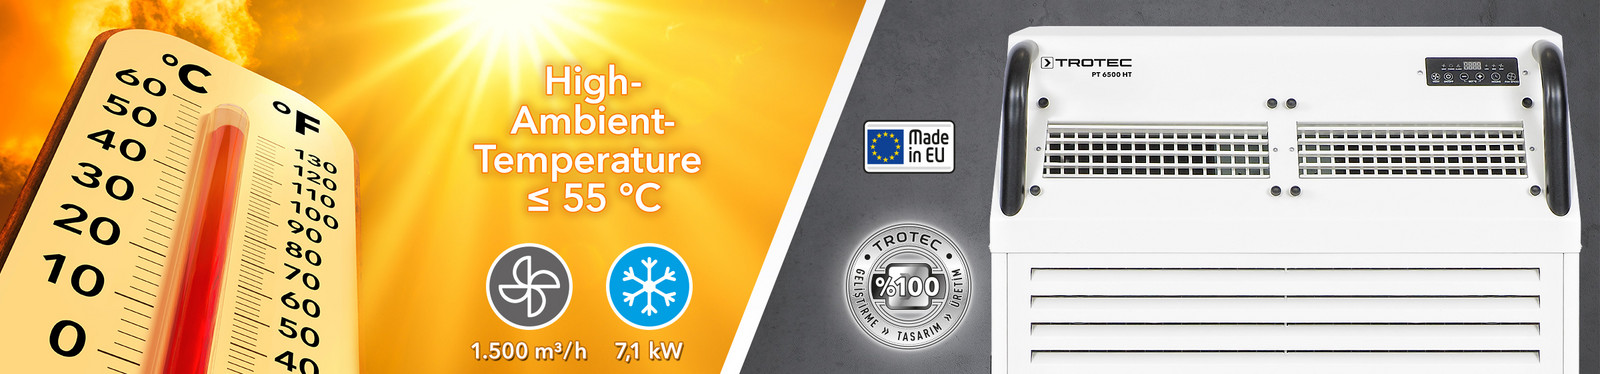 Kendini kanıtlamış Trotec kalitesi: +55 °C'ye kadar yüksek ortam sıcaklıkları için PT 6500 HT sanayi tipi klima cihazı